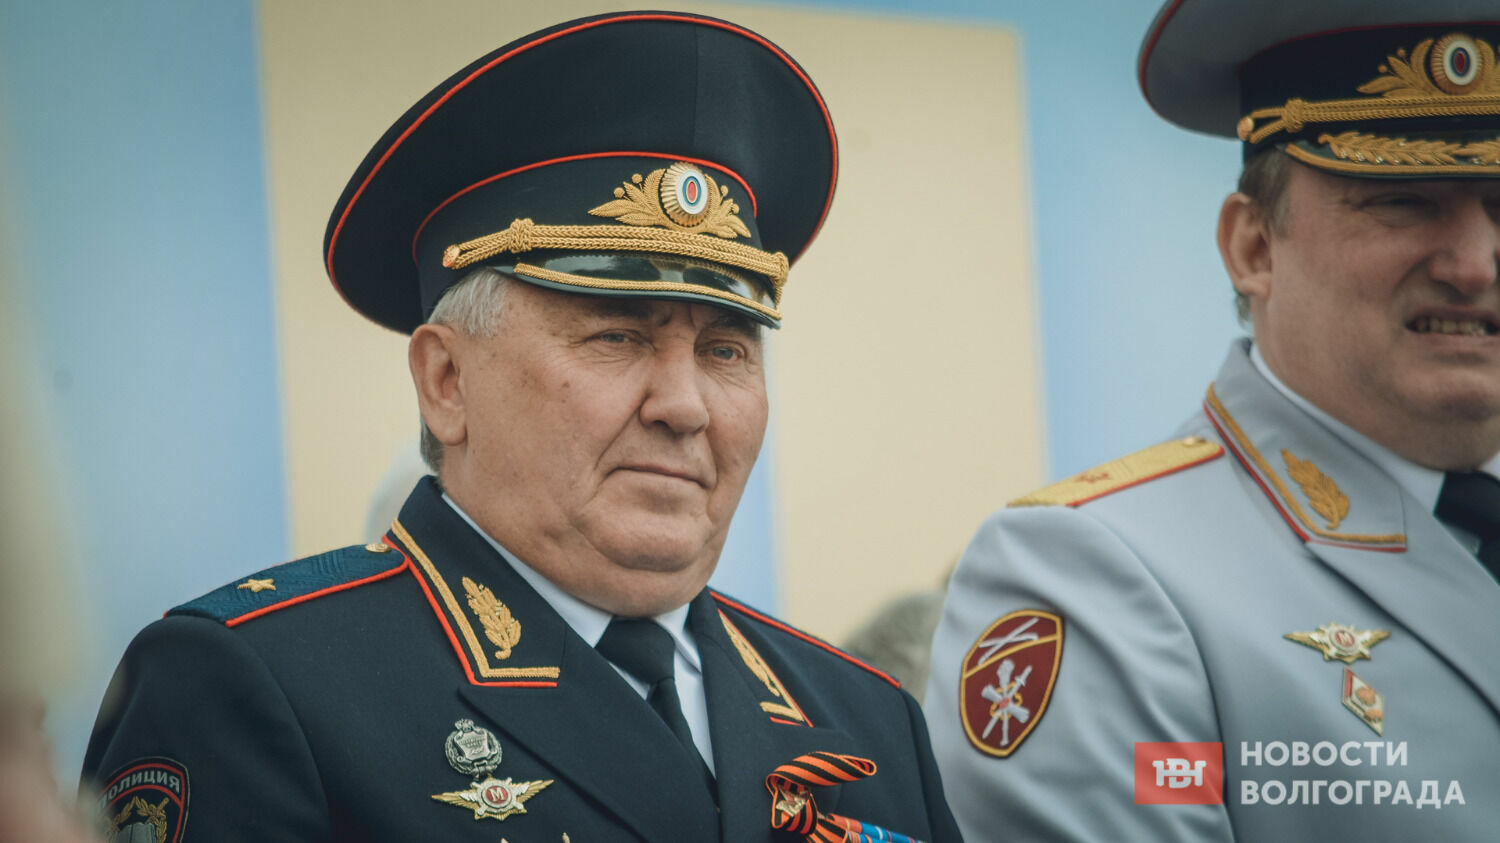 Начальник волгоградской академии МВД Владимир Третьяков